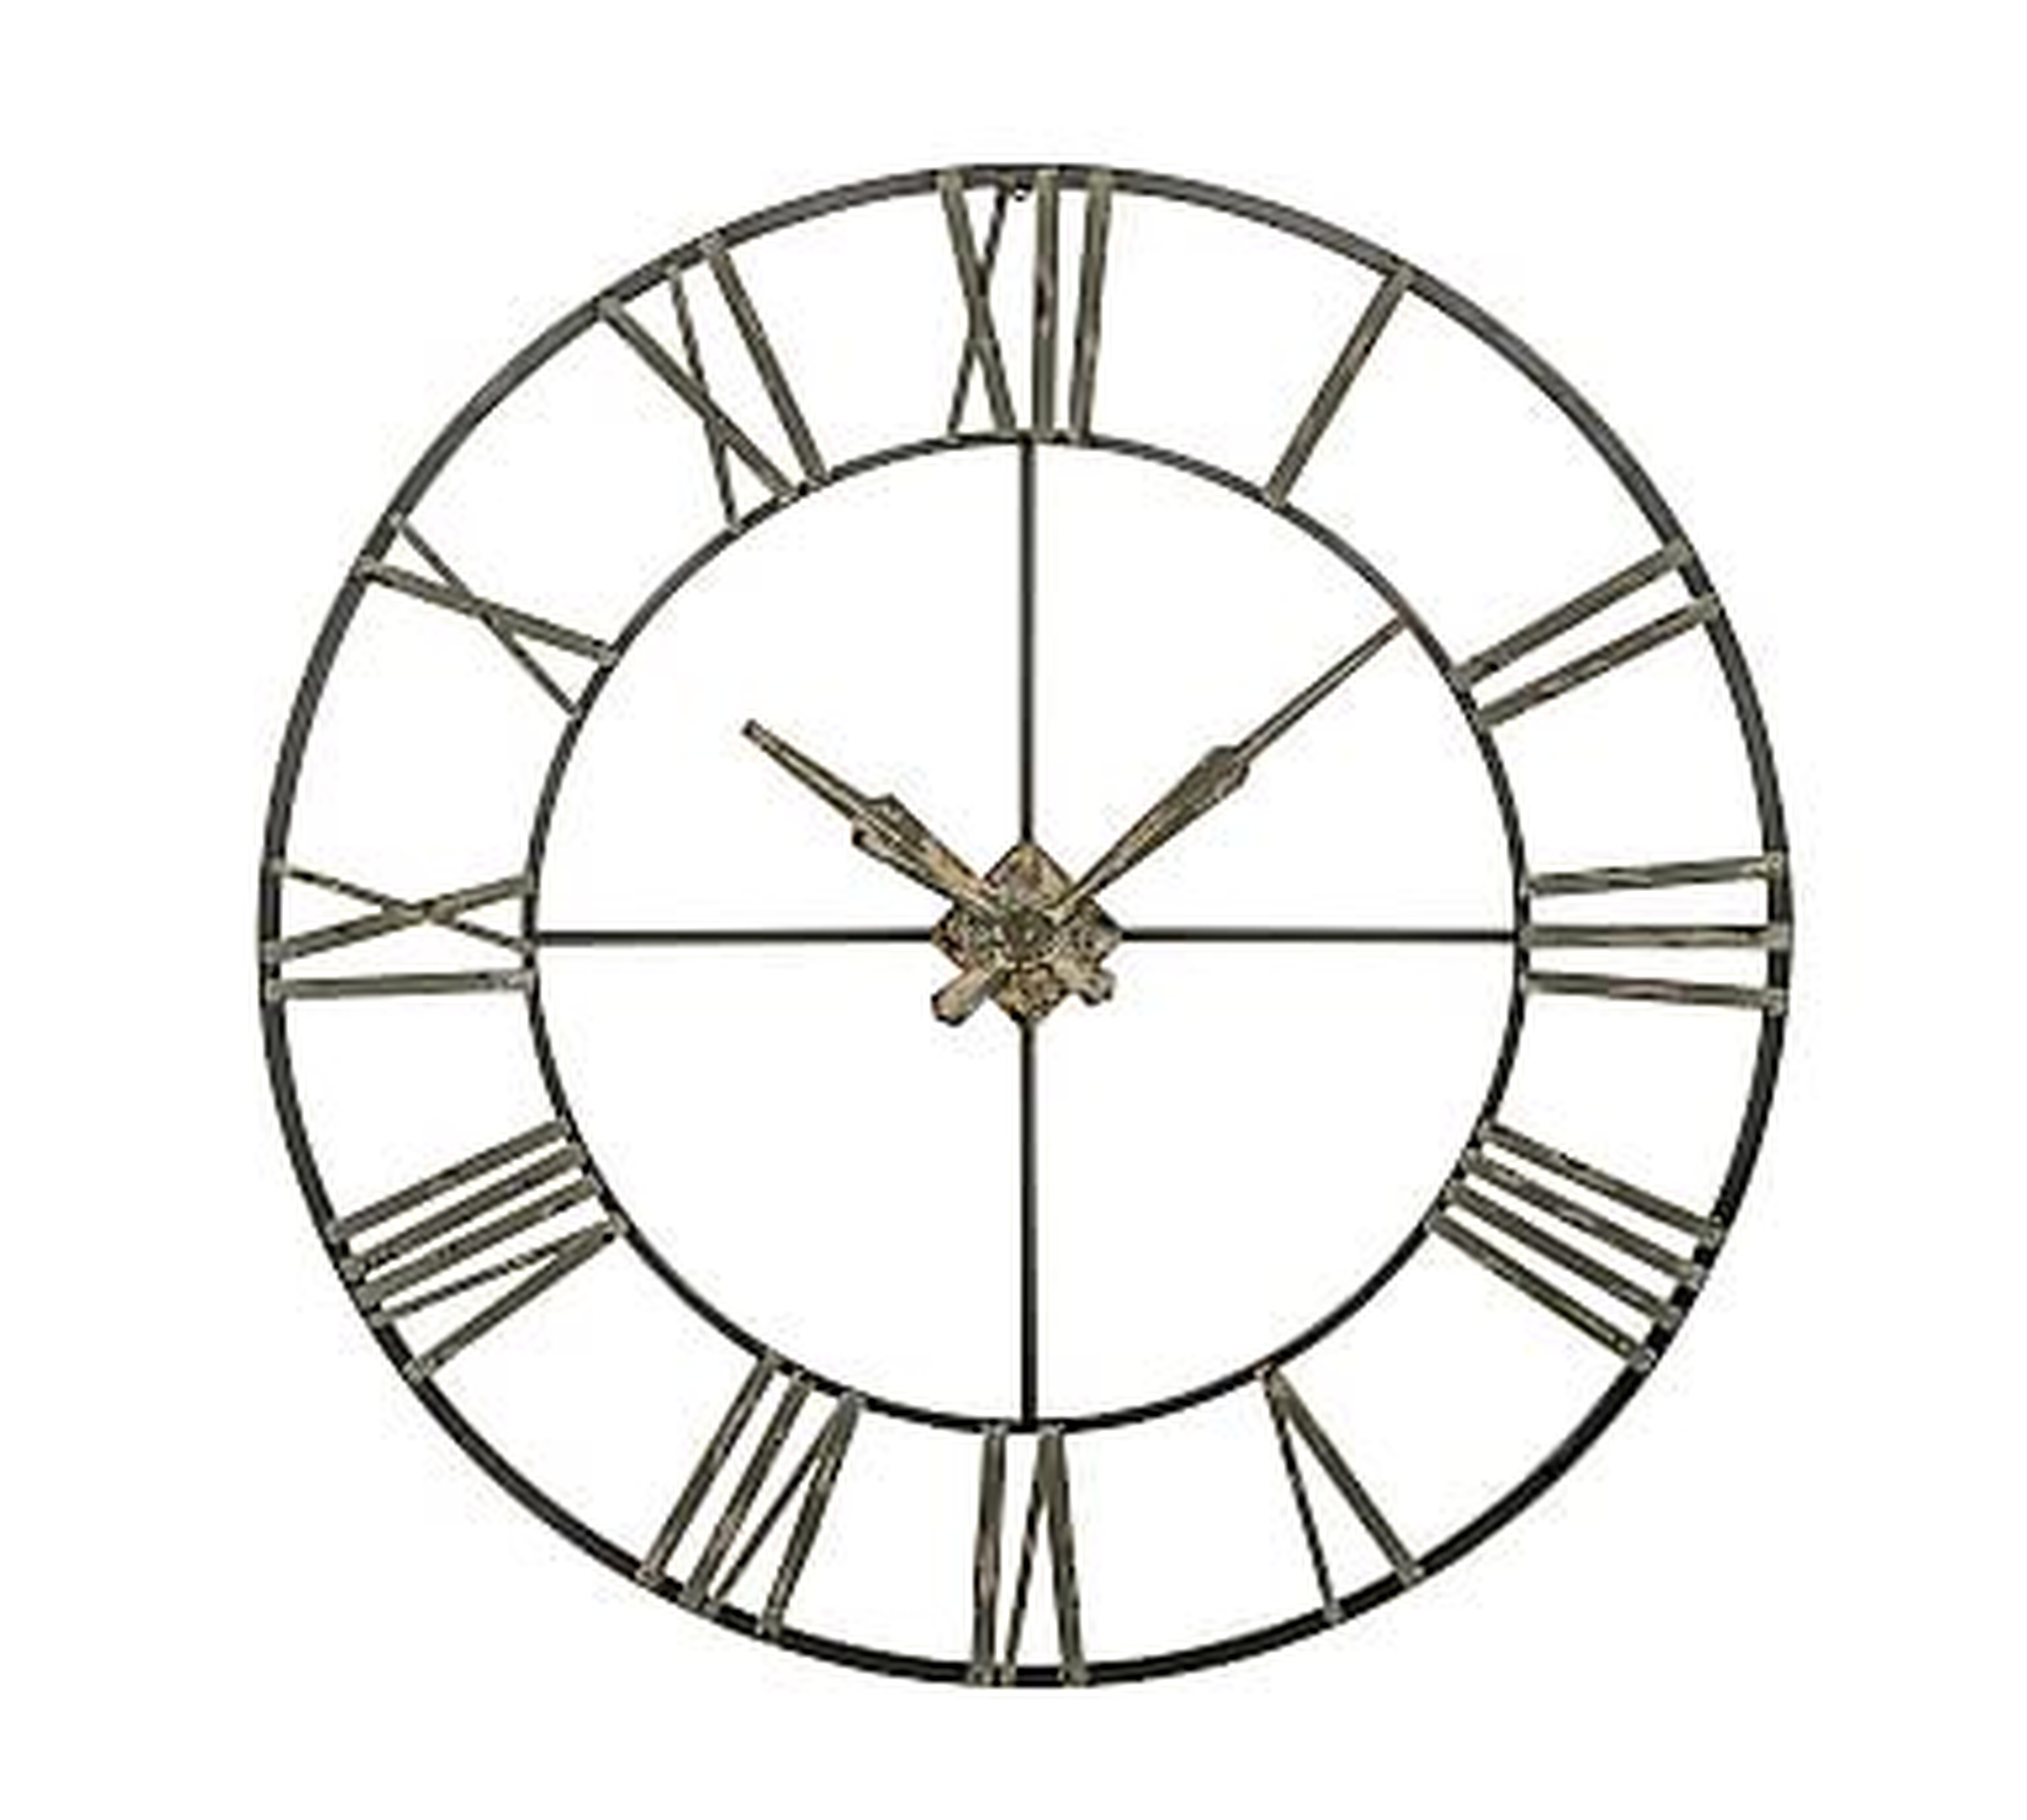 Oversized Galvanized Wall Clock, 47.75"Dia. - Pottery Barn